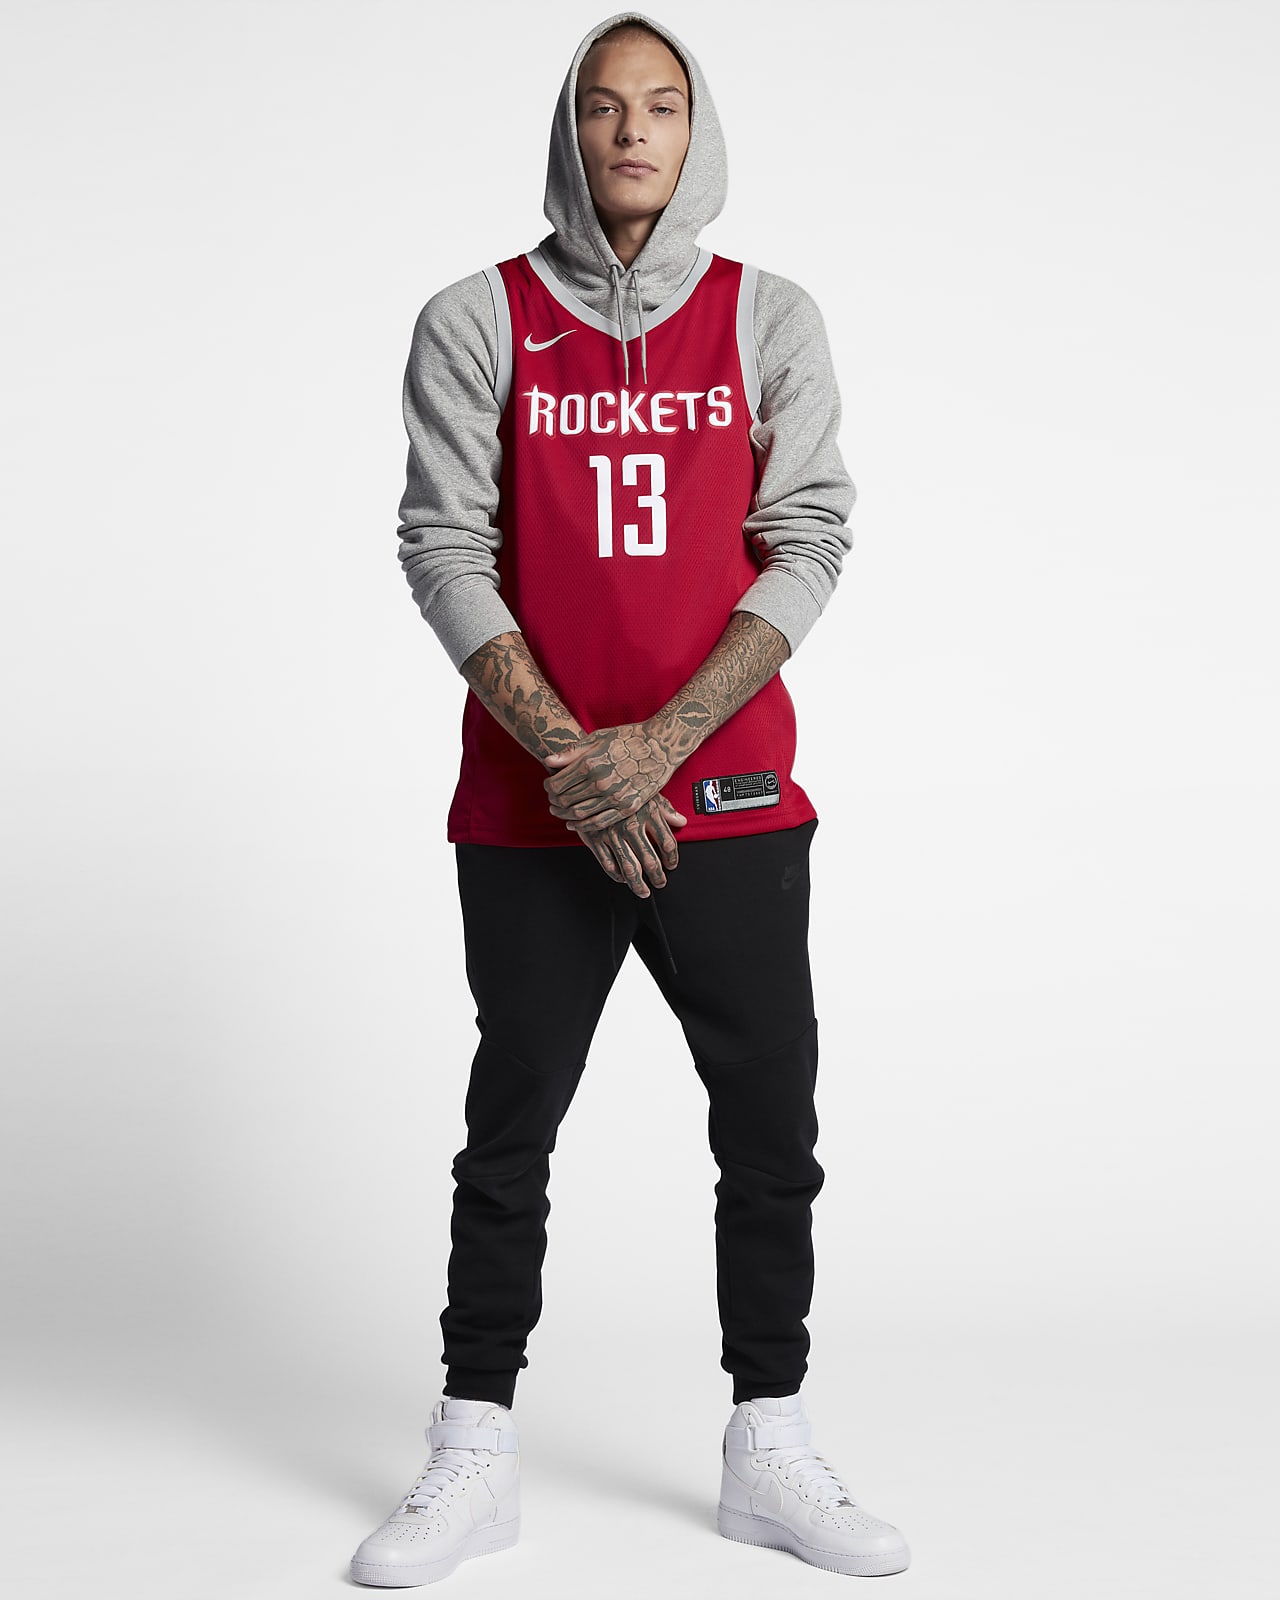 James Harden Rockets Icon Edition Nike NBA Swingman Jersey. Nike CH